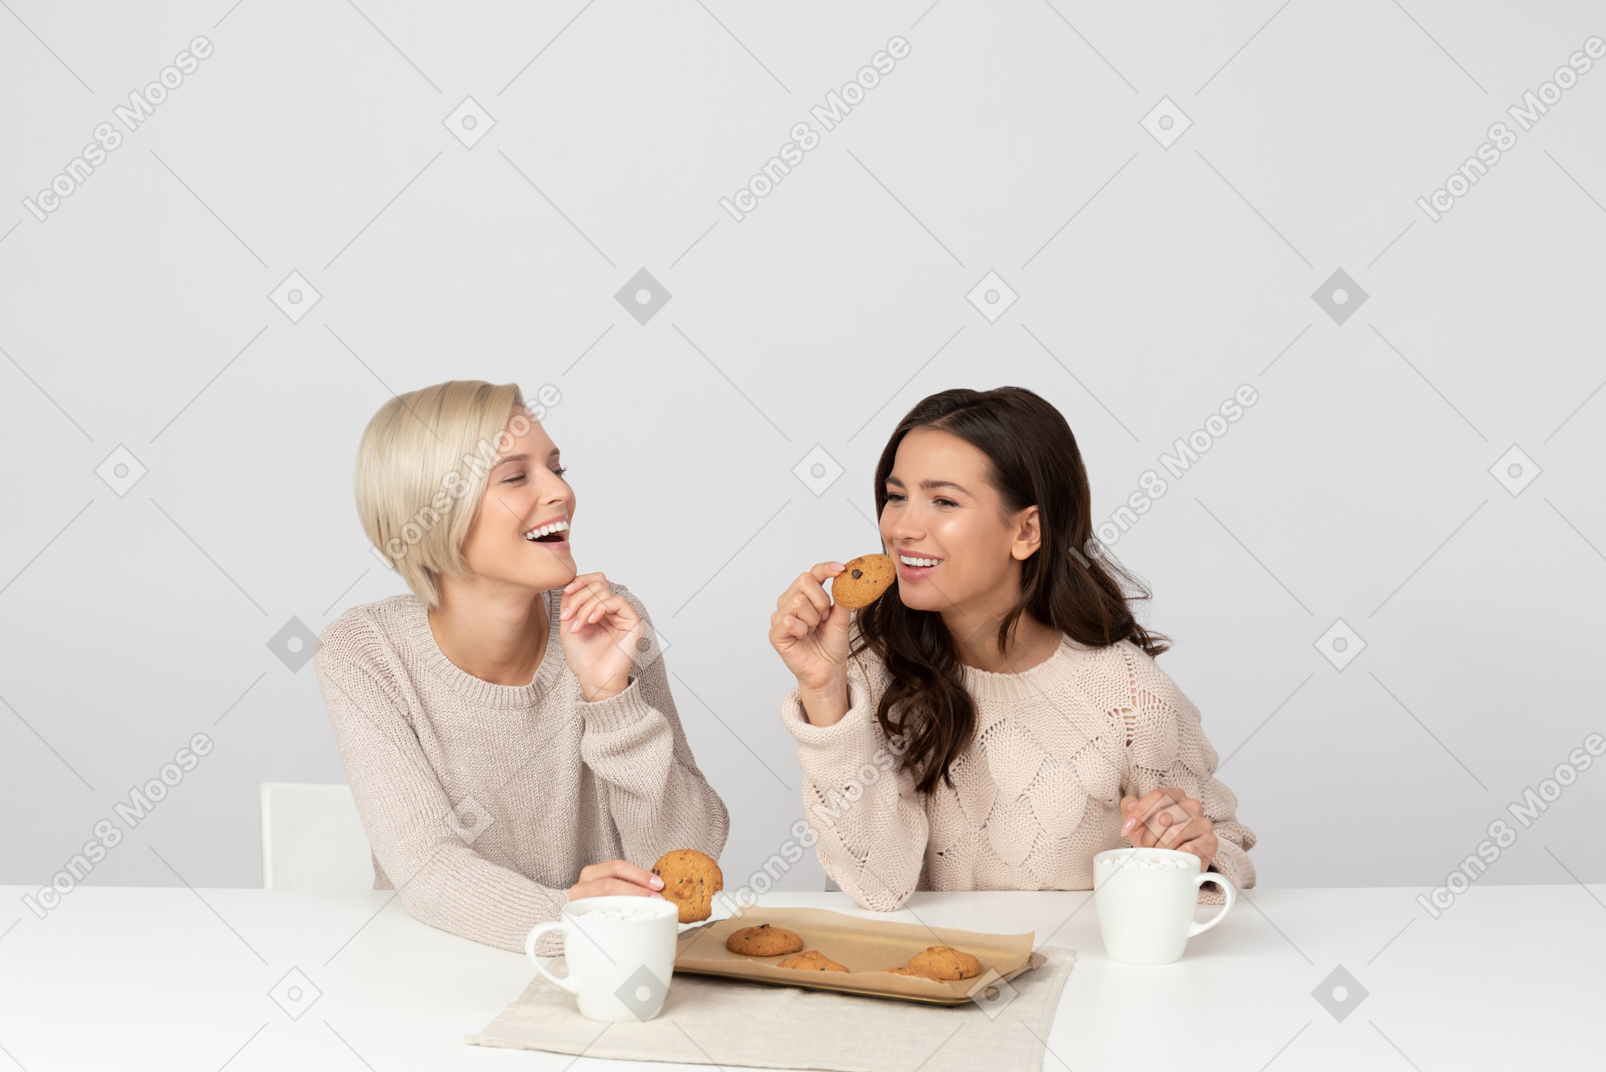 Jeunes femmes buvant du café avec des biscuits et riant